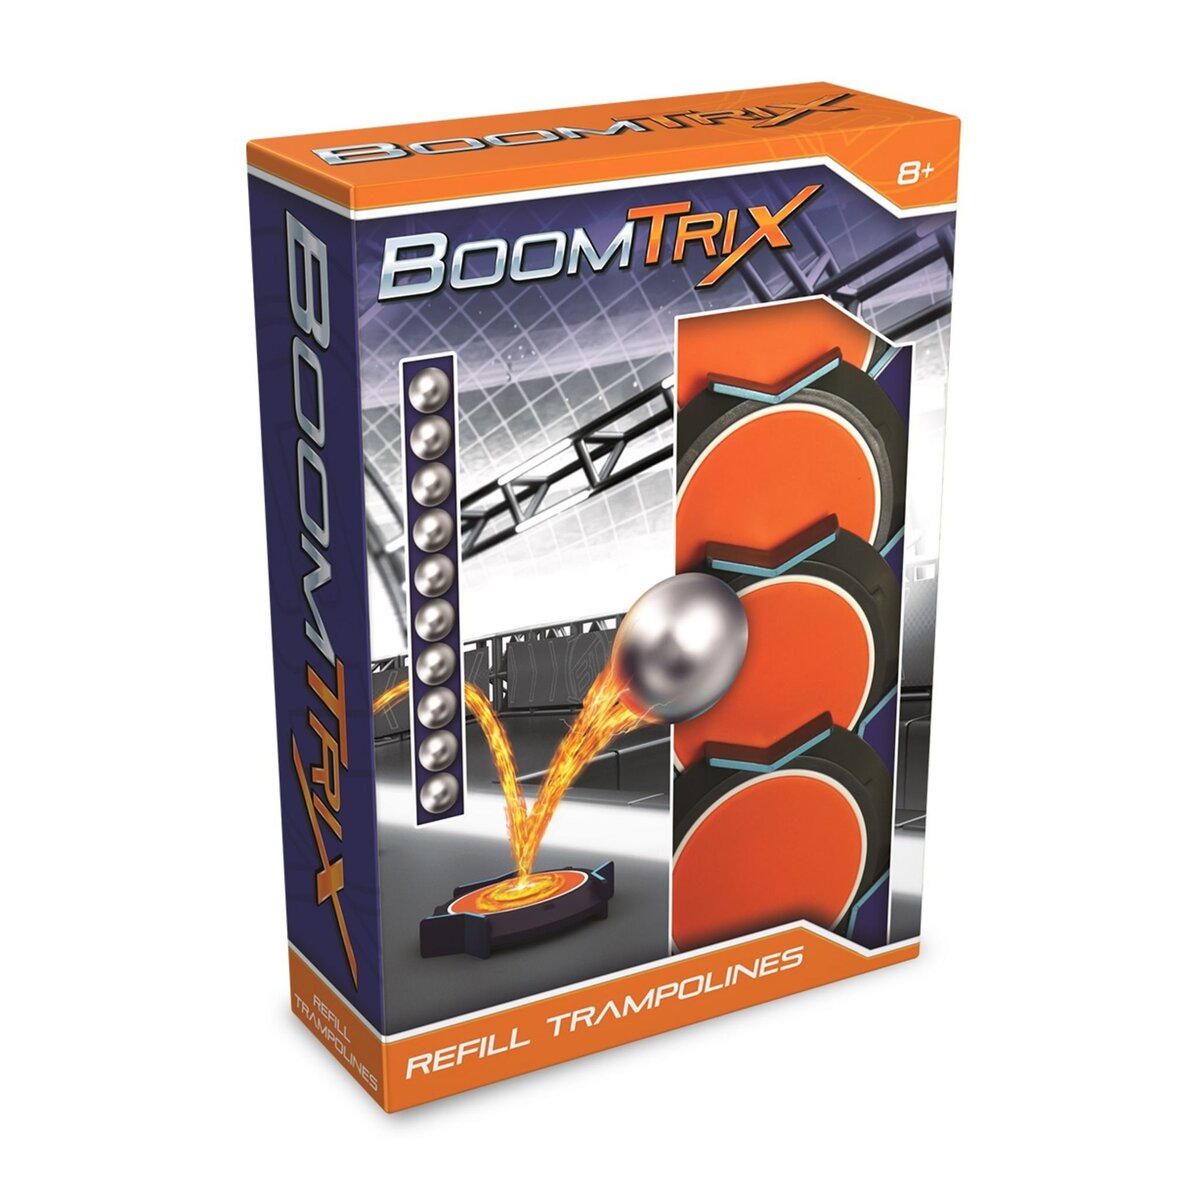 GOLIATH Pack de 4 trampolines + 10 billes métalliques - Boomtrix Refill